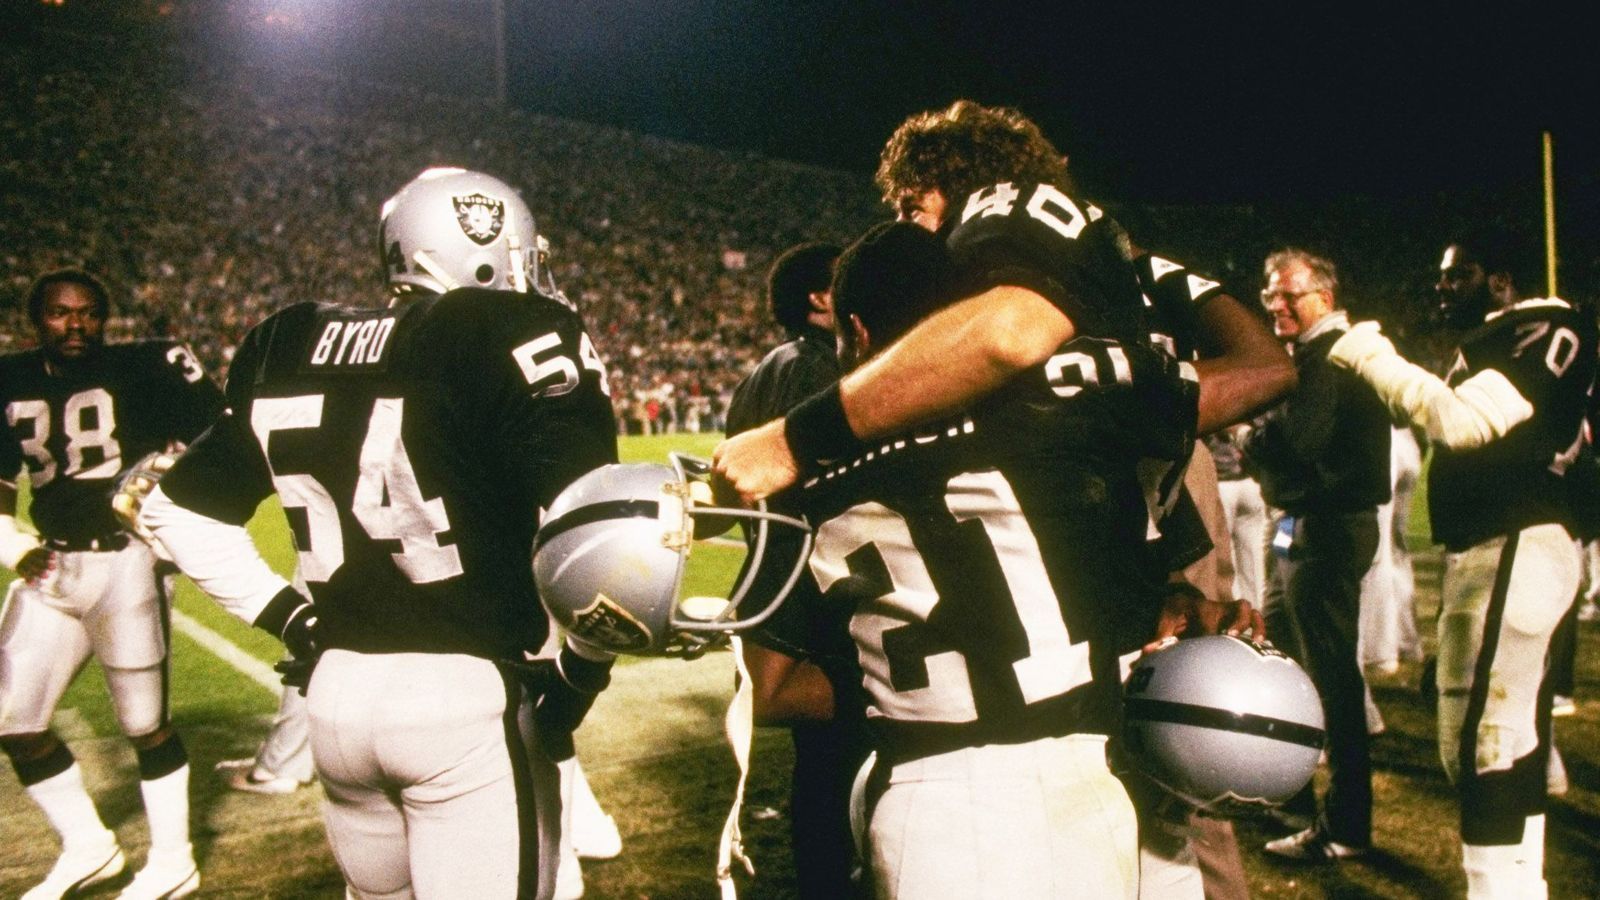 <strong>Las Vegas Raiders: drei Siege</strong><br>
                Drei Titel feierten die Raiders bereits. Allerdings sind alle Erfolge schon etwas länger her: 1976, 1981 und 1984 gewannen die Raiders den Super Bowl. In den Jahren 1976 und 1981 gelangen die Titelgewinne noch als Oakland Raiders, 1984 nach einem zwischenzeitlichen Umzug folgte Nummer drei als Los Angeles Raiders.
